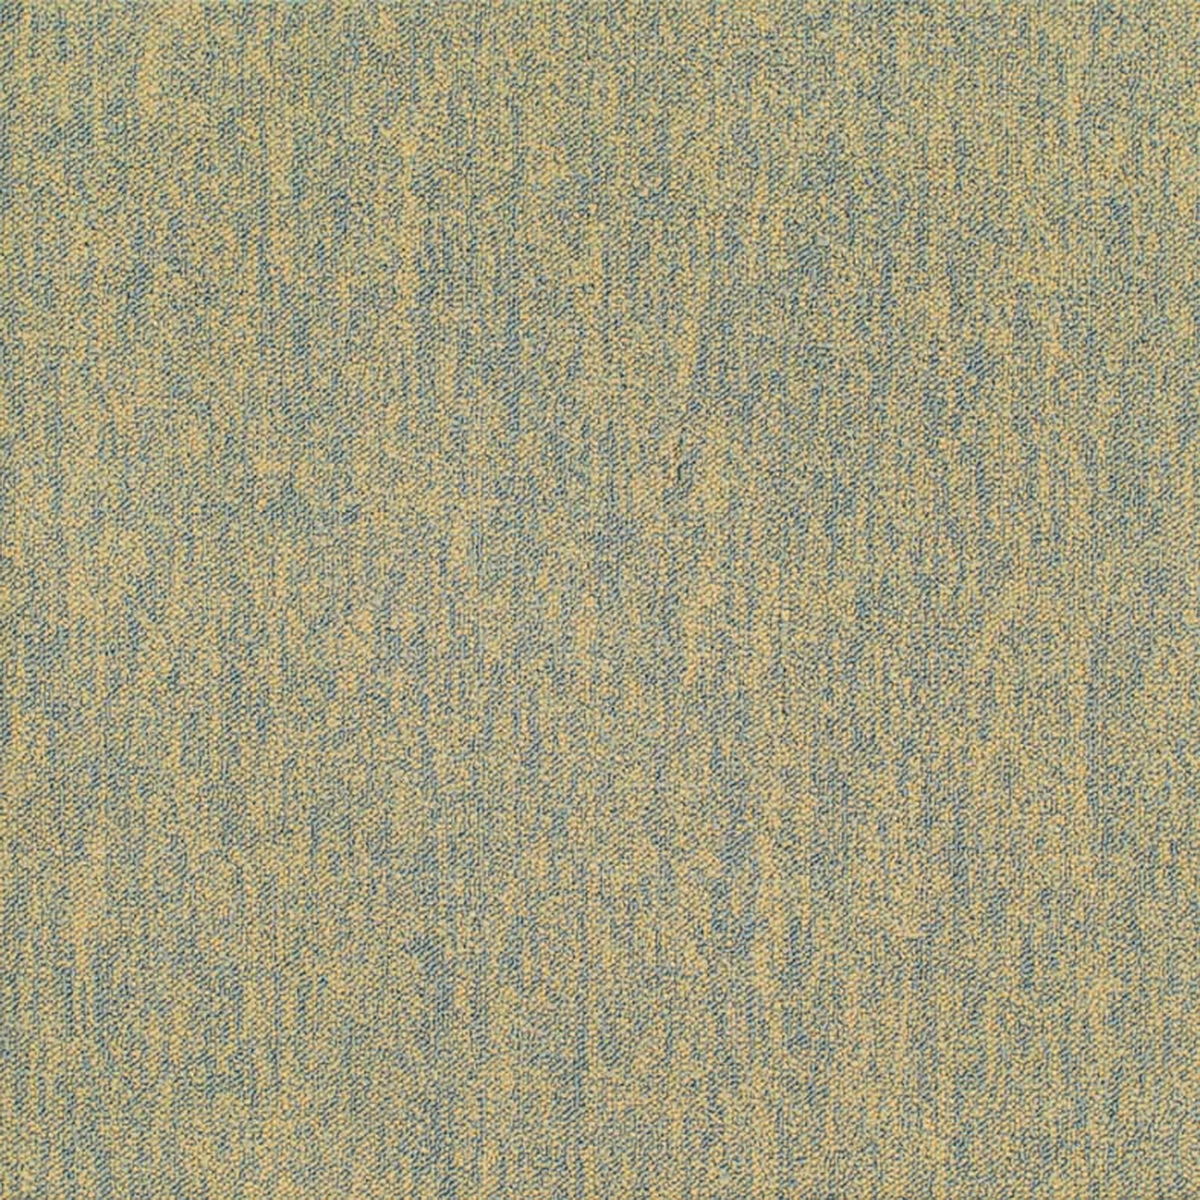 办公地毯ID9884